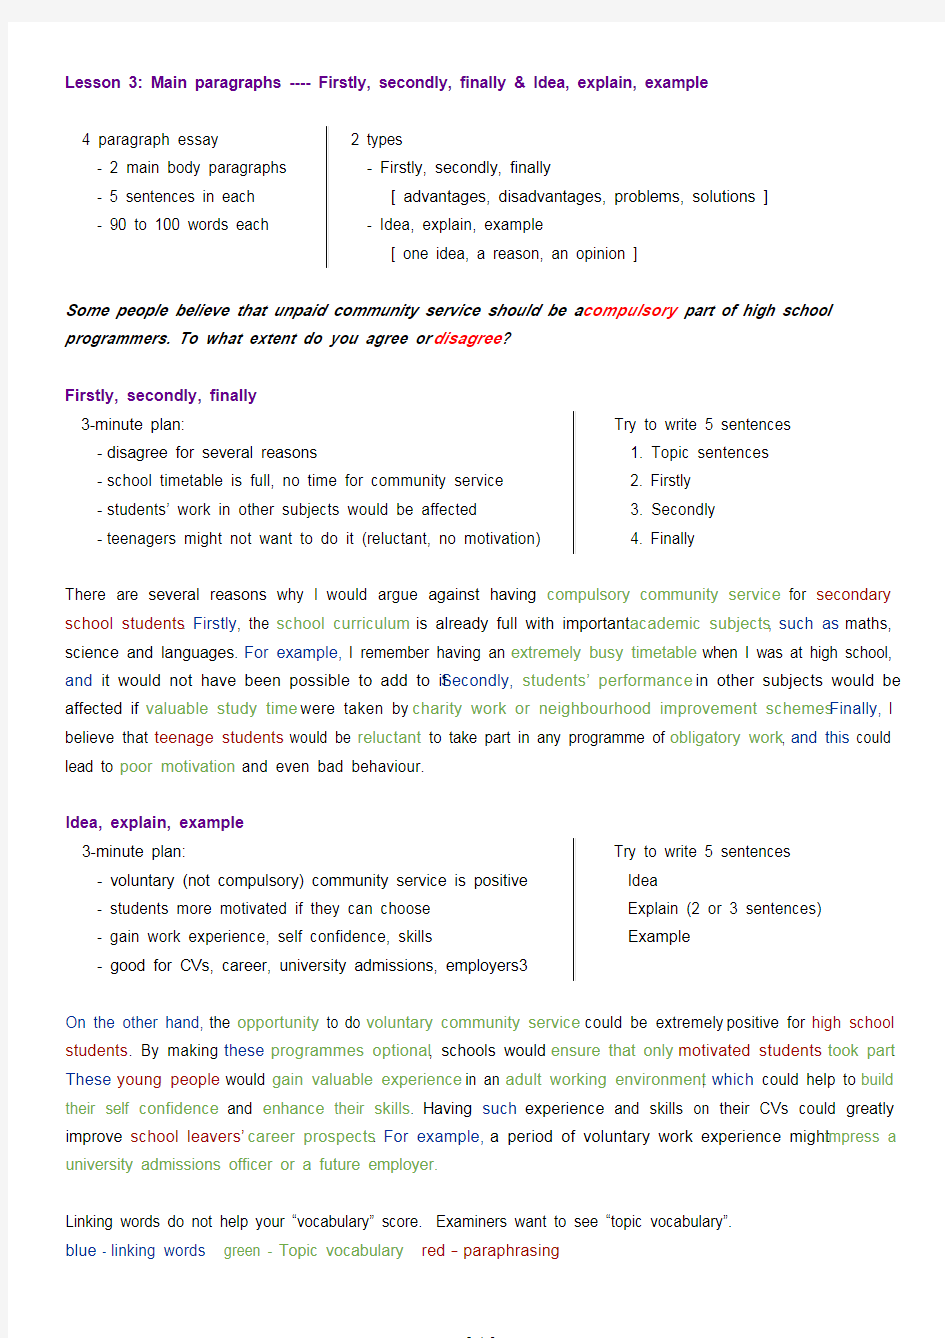 雅思写作-大作文-Simon-Writing-Task-2-视频课笔记.pdf